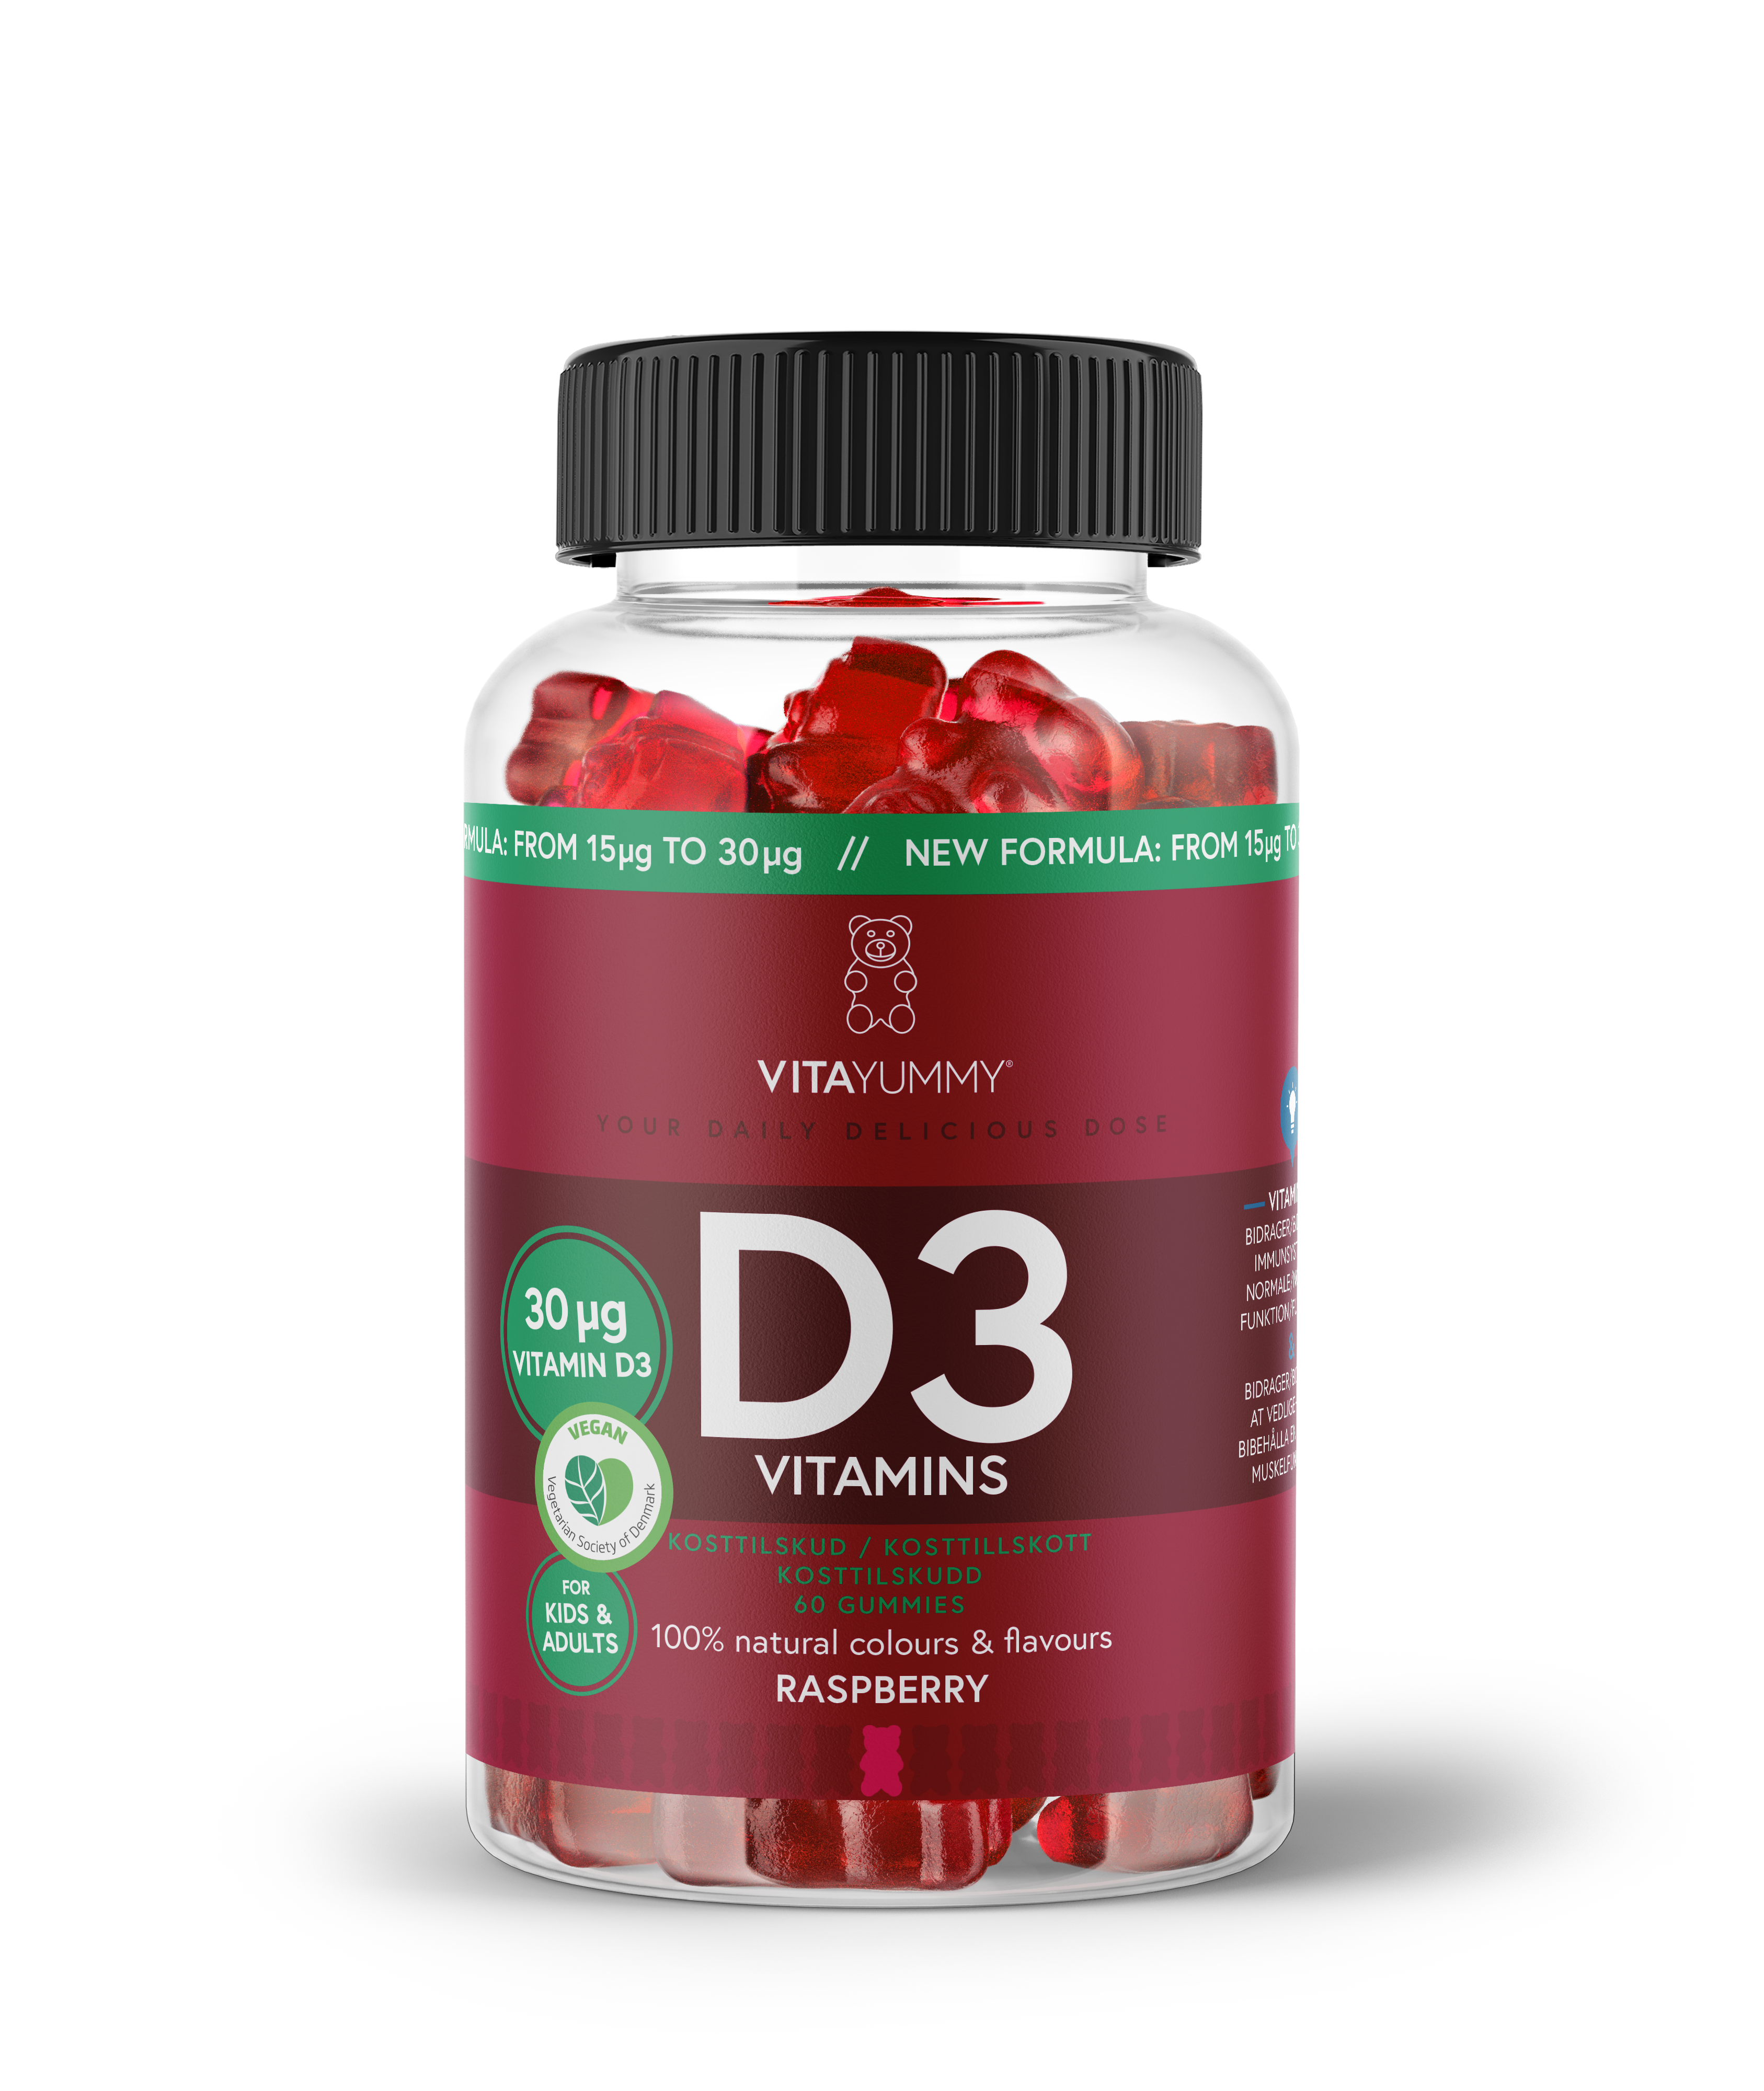 D3 - 30μg D vitamin